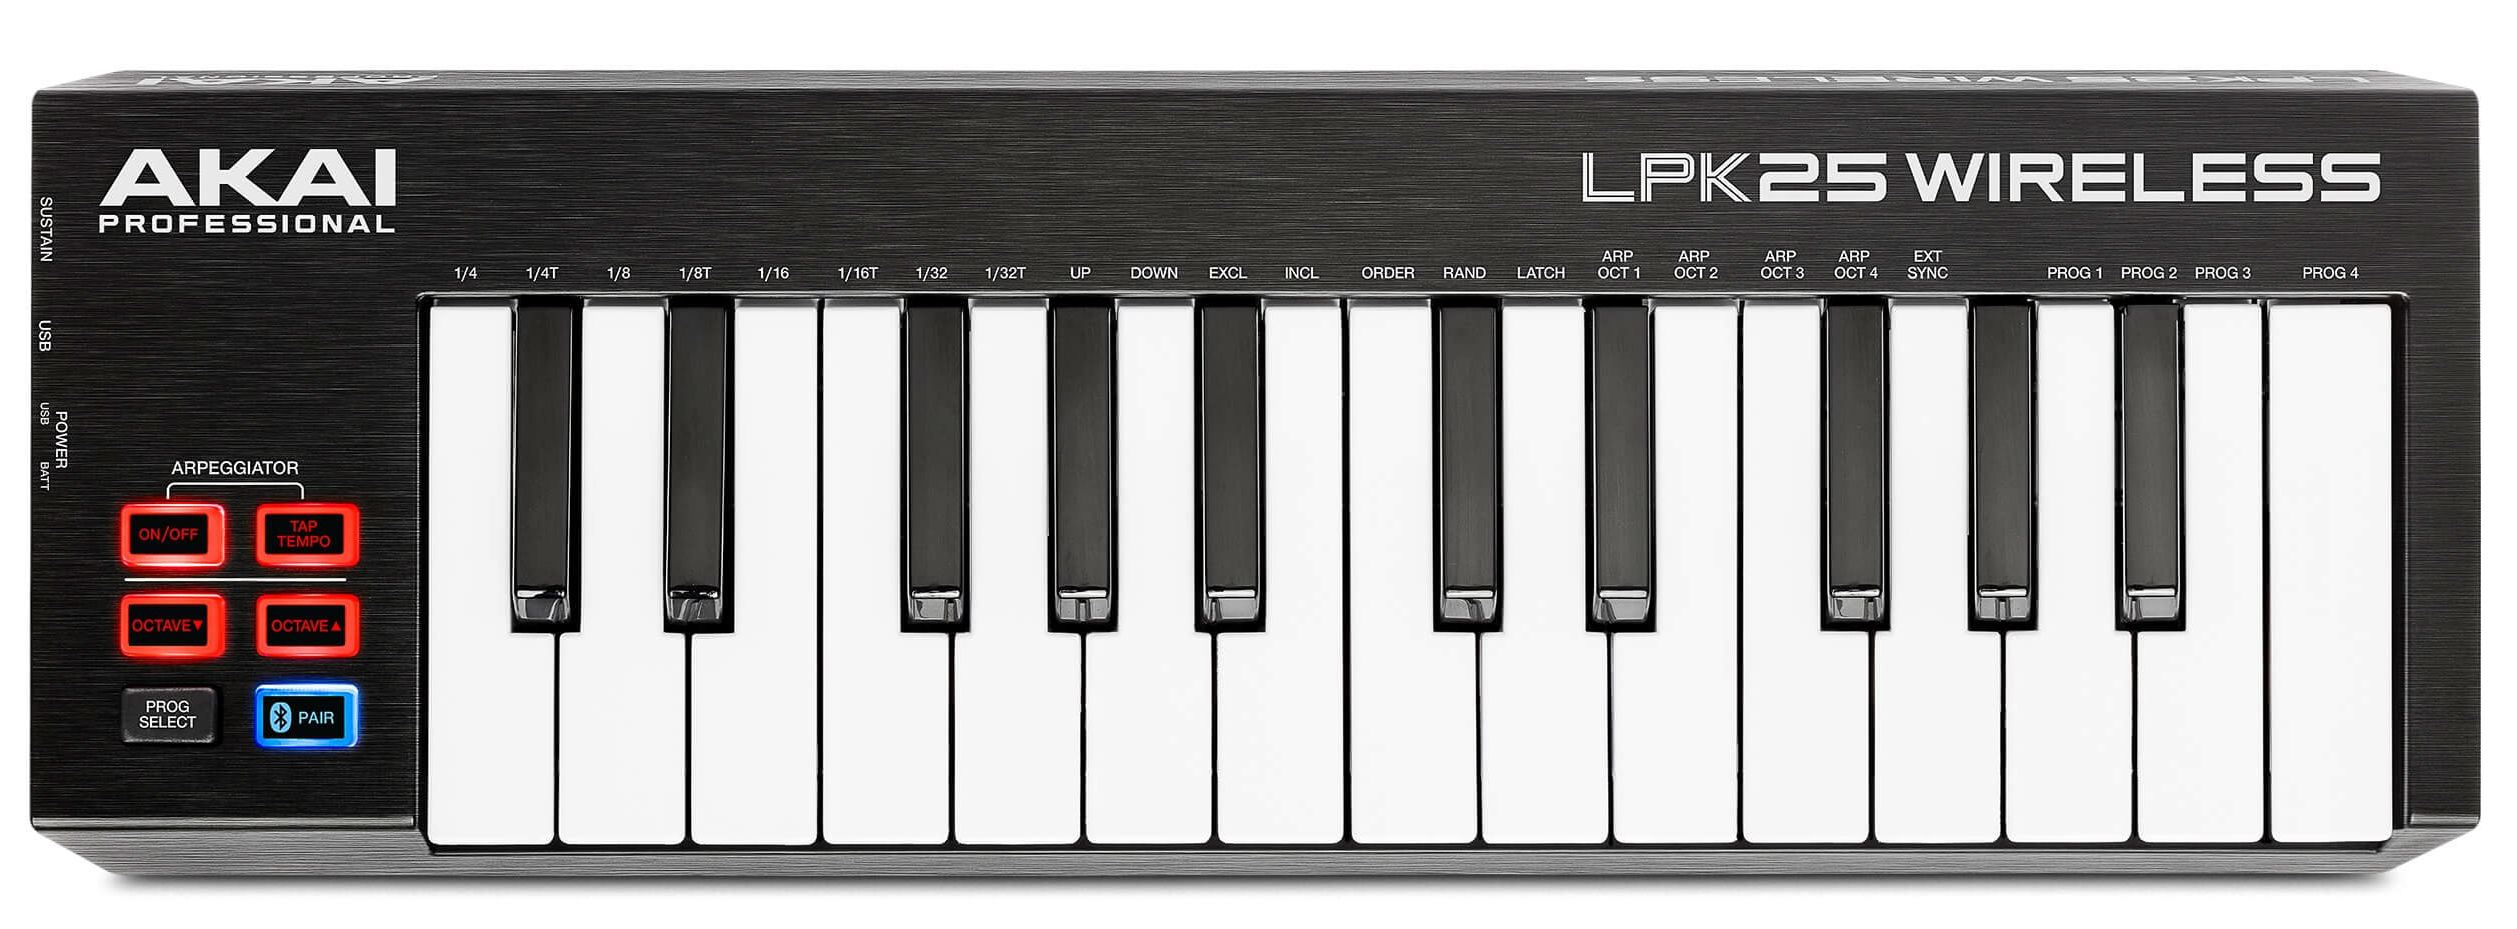 AKAI PRO LPK25 WIRELESS портативная беспроводная USB/MIDI-клавиатура